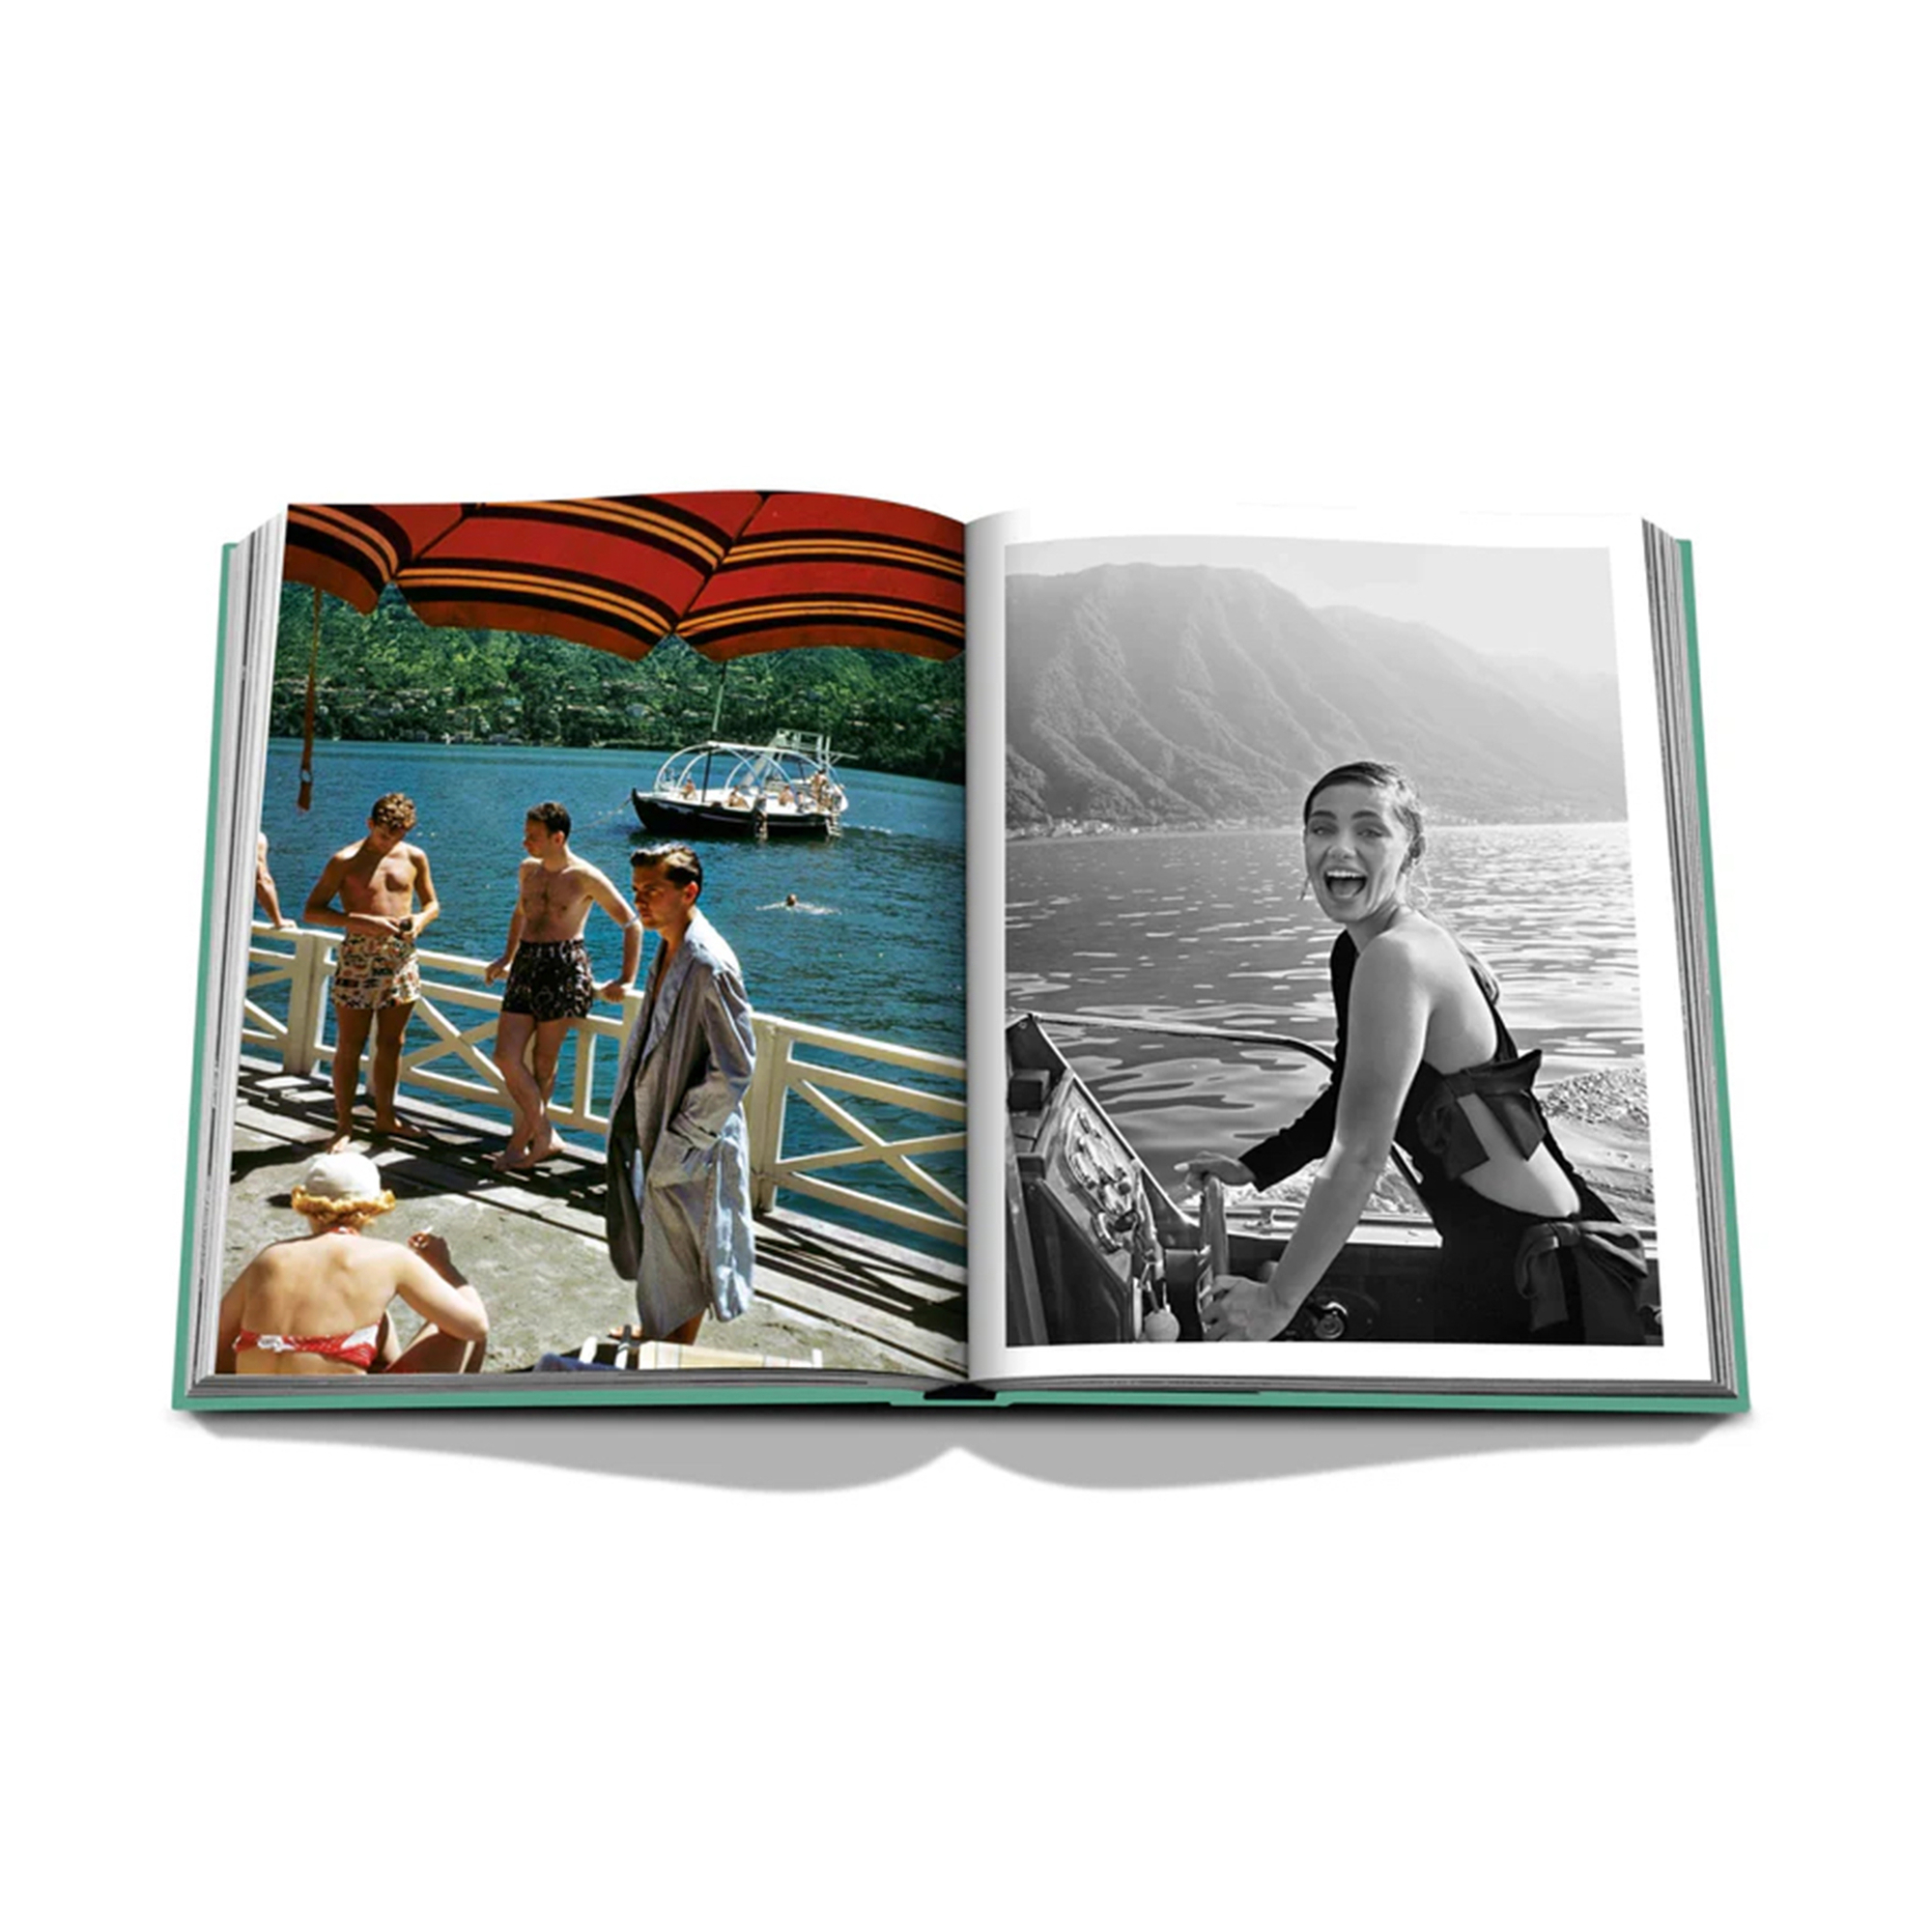 Assouline - Lake Como Idyll keménykötésű könyv